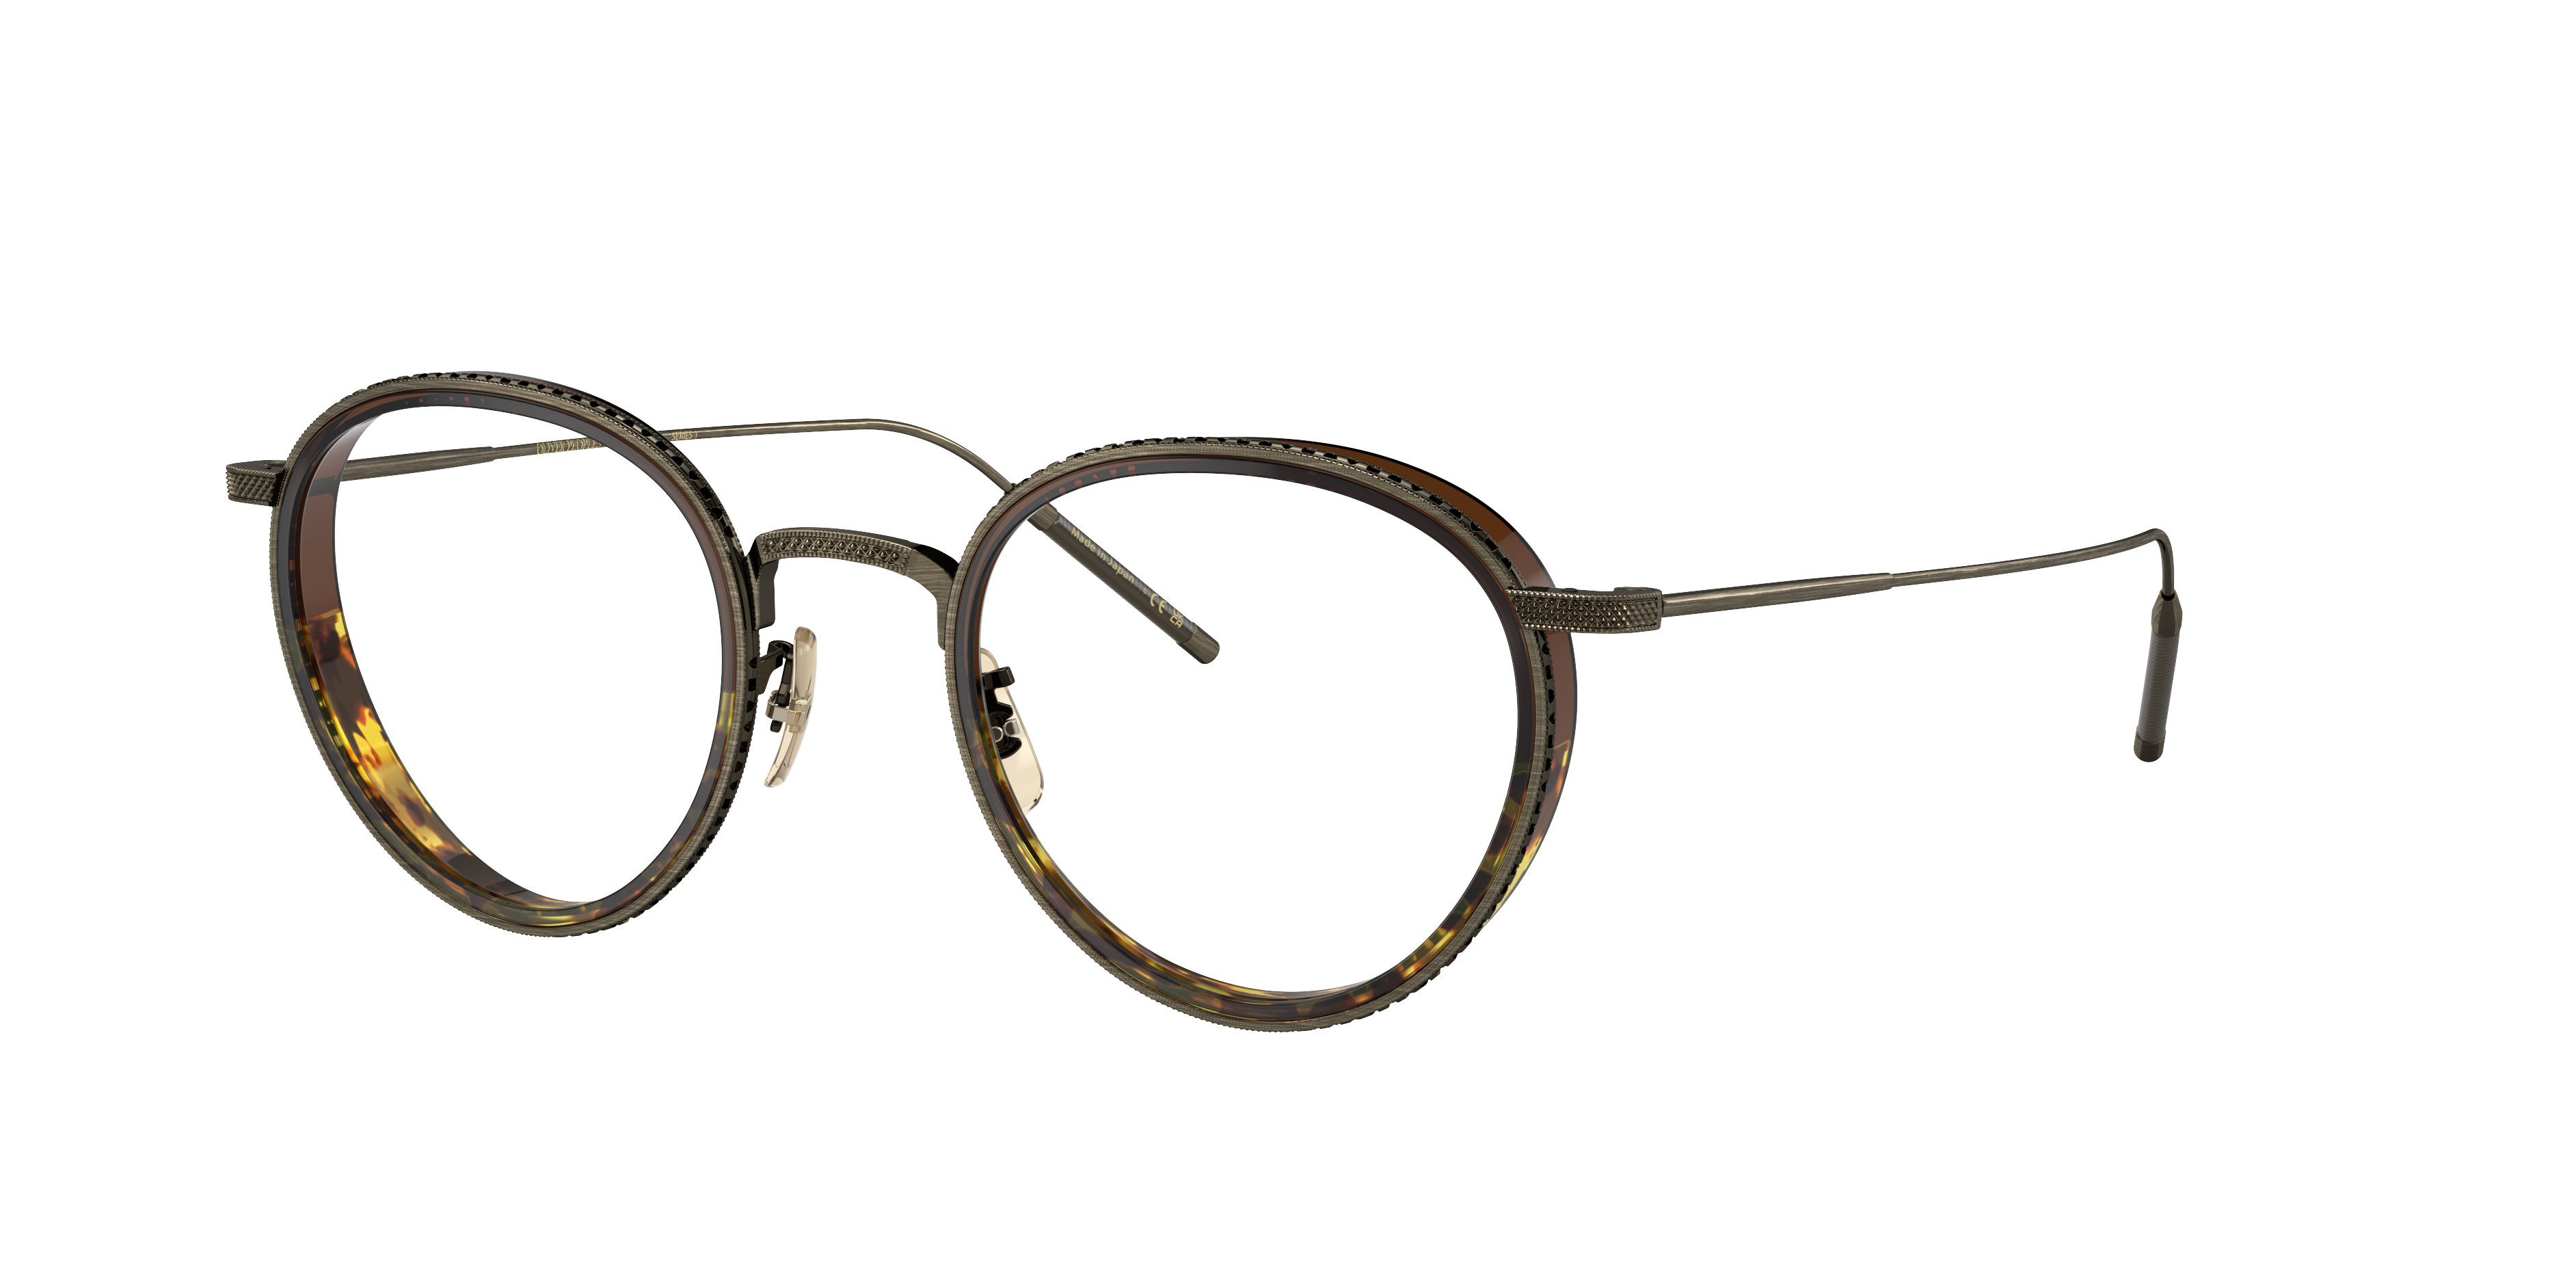 Oliver TK-8 Eyeglasses in Antique Gold/Espresso/382 Gradient | Oliver®